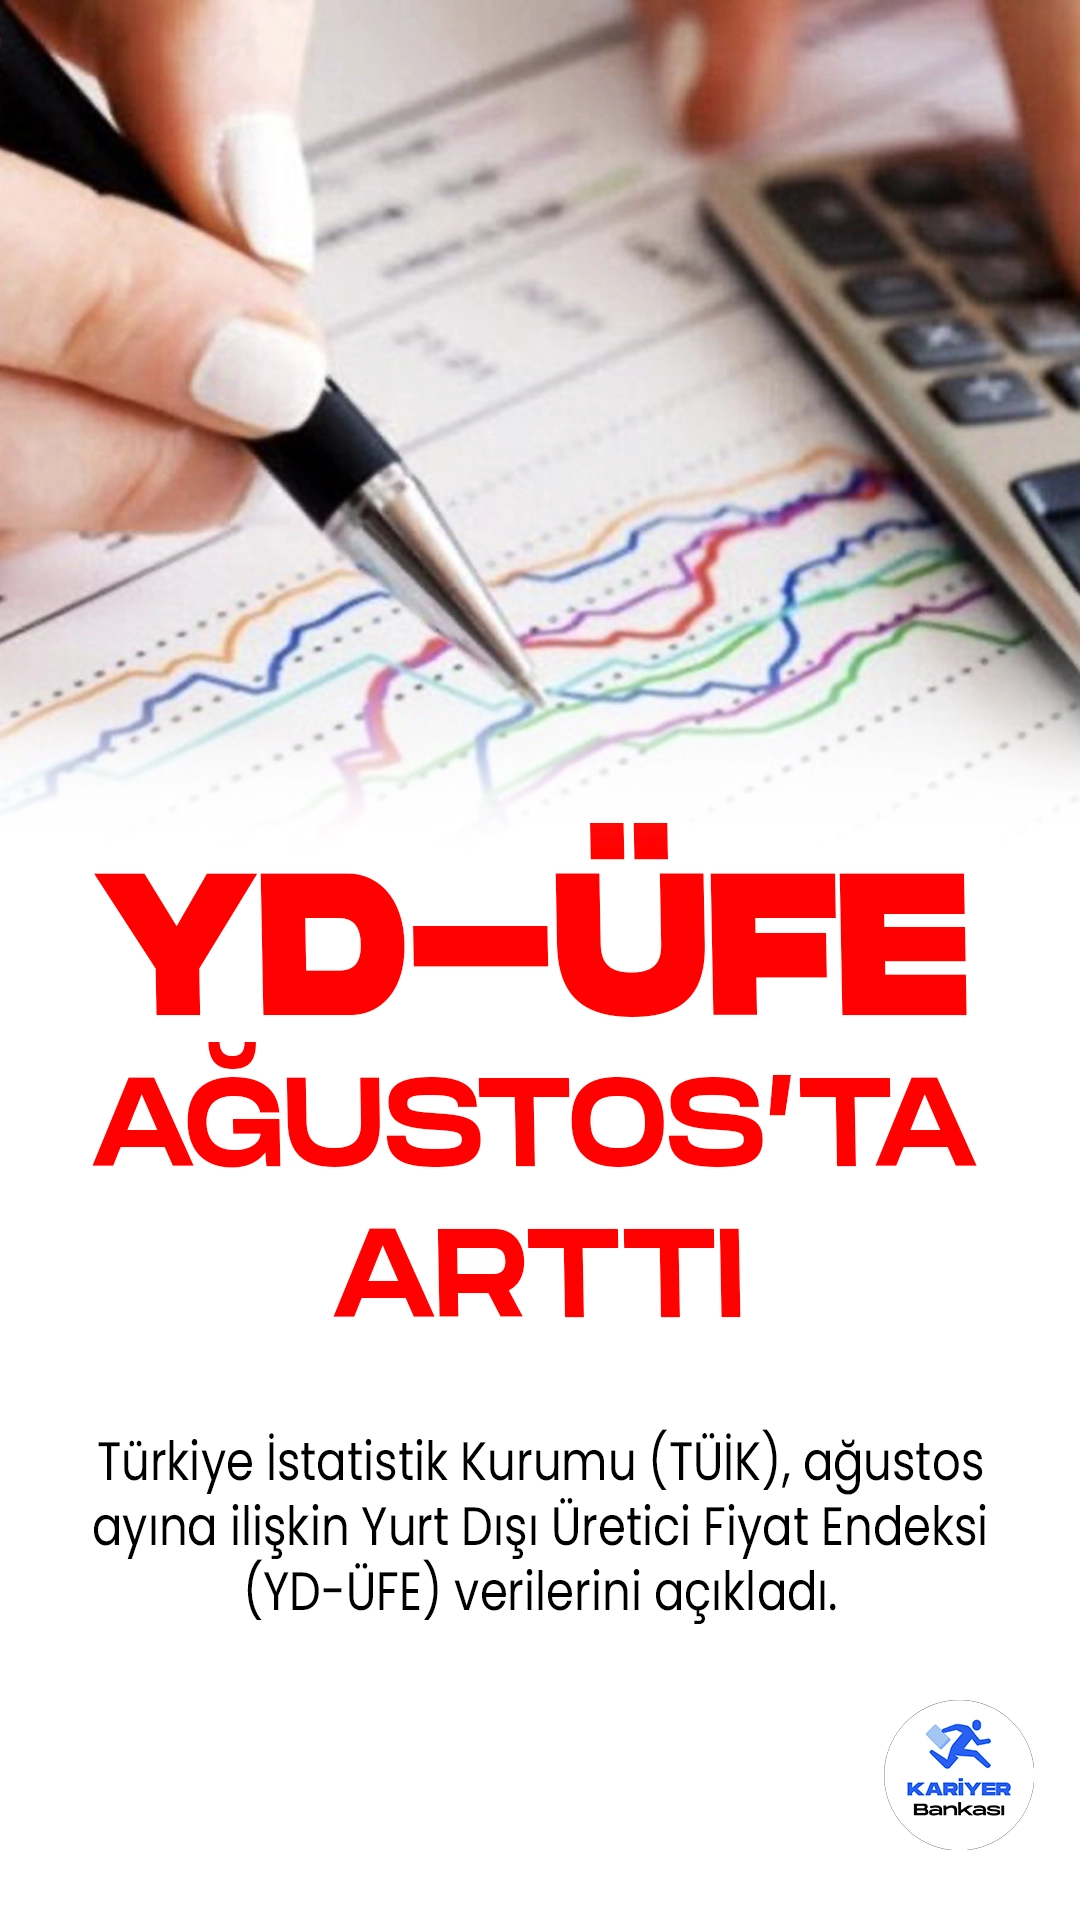 Yurt Dışı Üretici Fiyat Endeksi (YD-ÜFE) Ağustos'ta Büyük Artış Gösterdi.Türkiye İstatistik Kurumu (TÜİK), ağustos ayına ilişkin Yurt Dışı Üretici Fiyat Endeksi (YD-ÜFE) verilerini açıkladı.